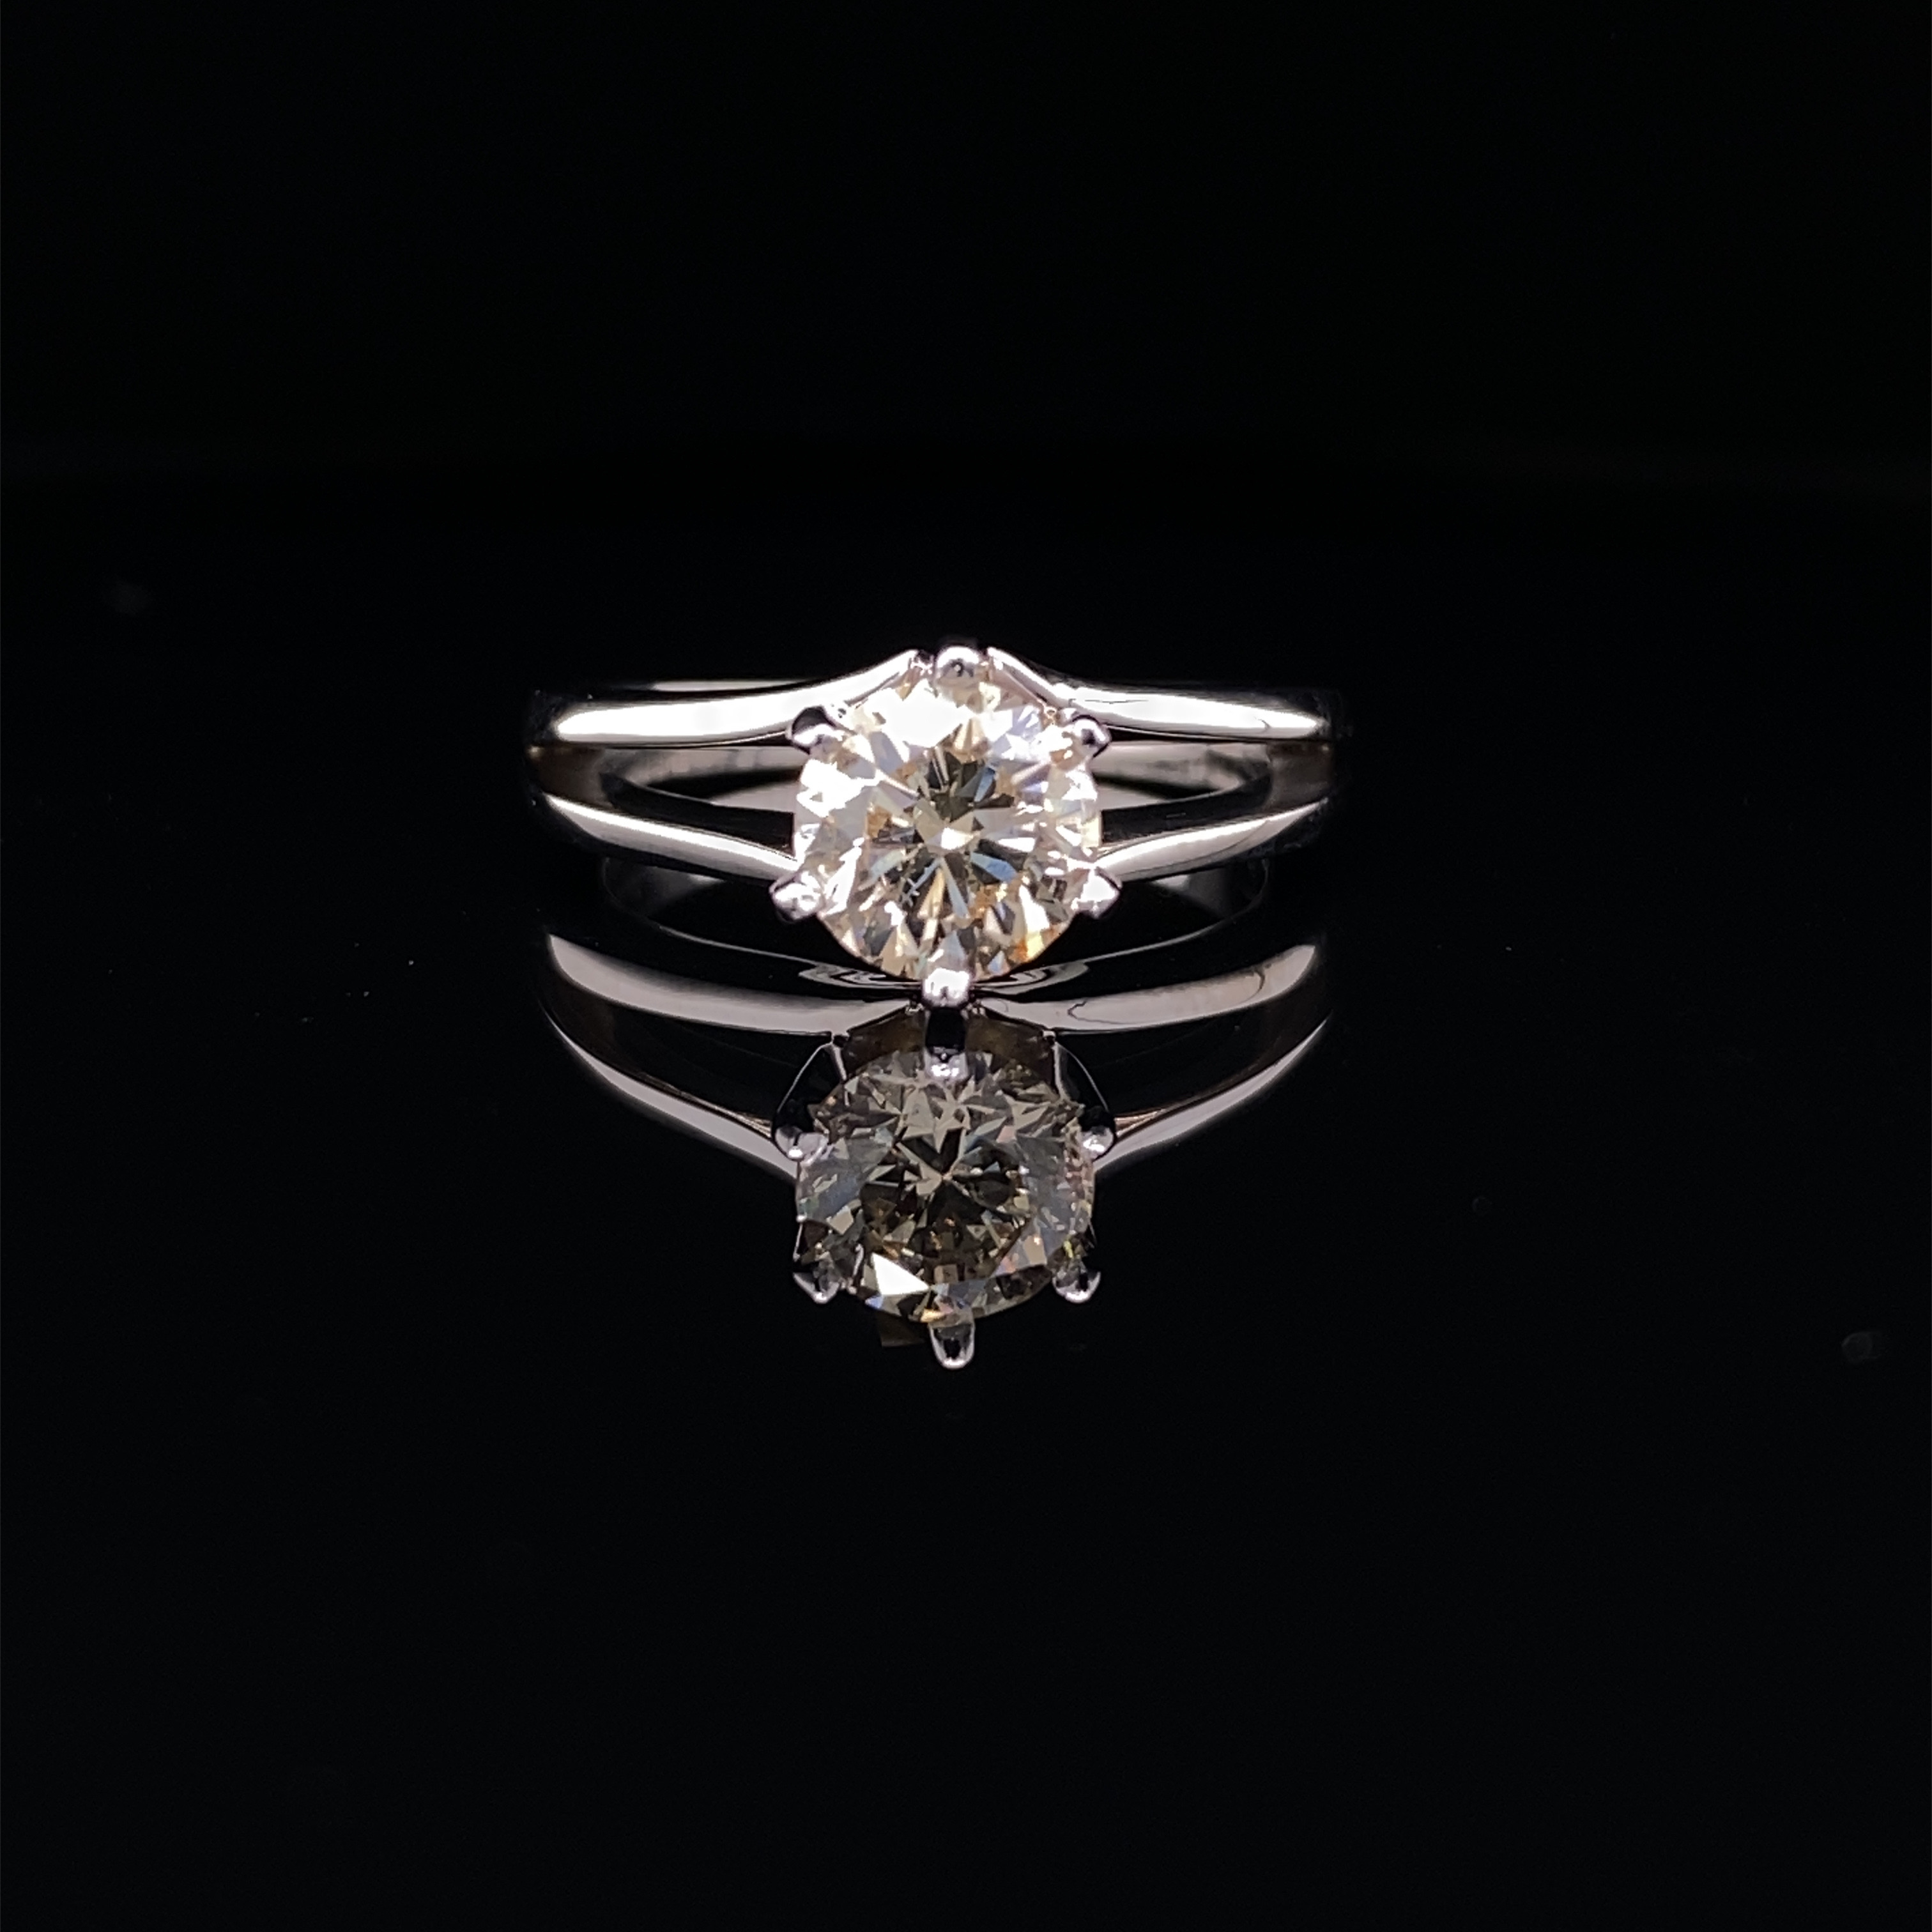 14K White Gold Ring 1.02ct. natural round brilliant cut diamond -  Cape - Si2